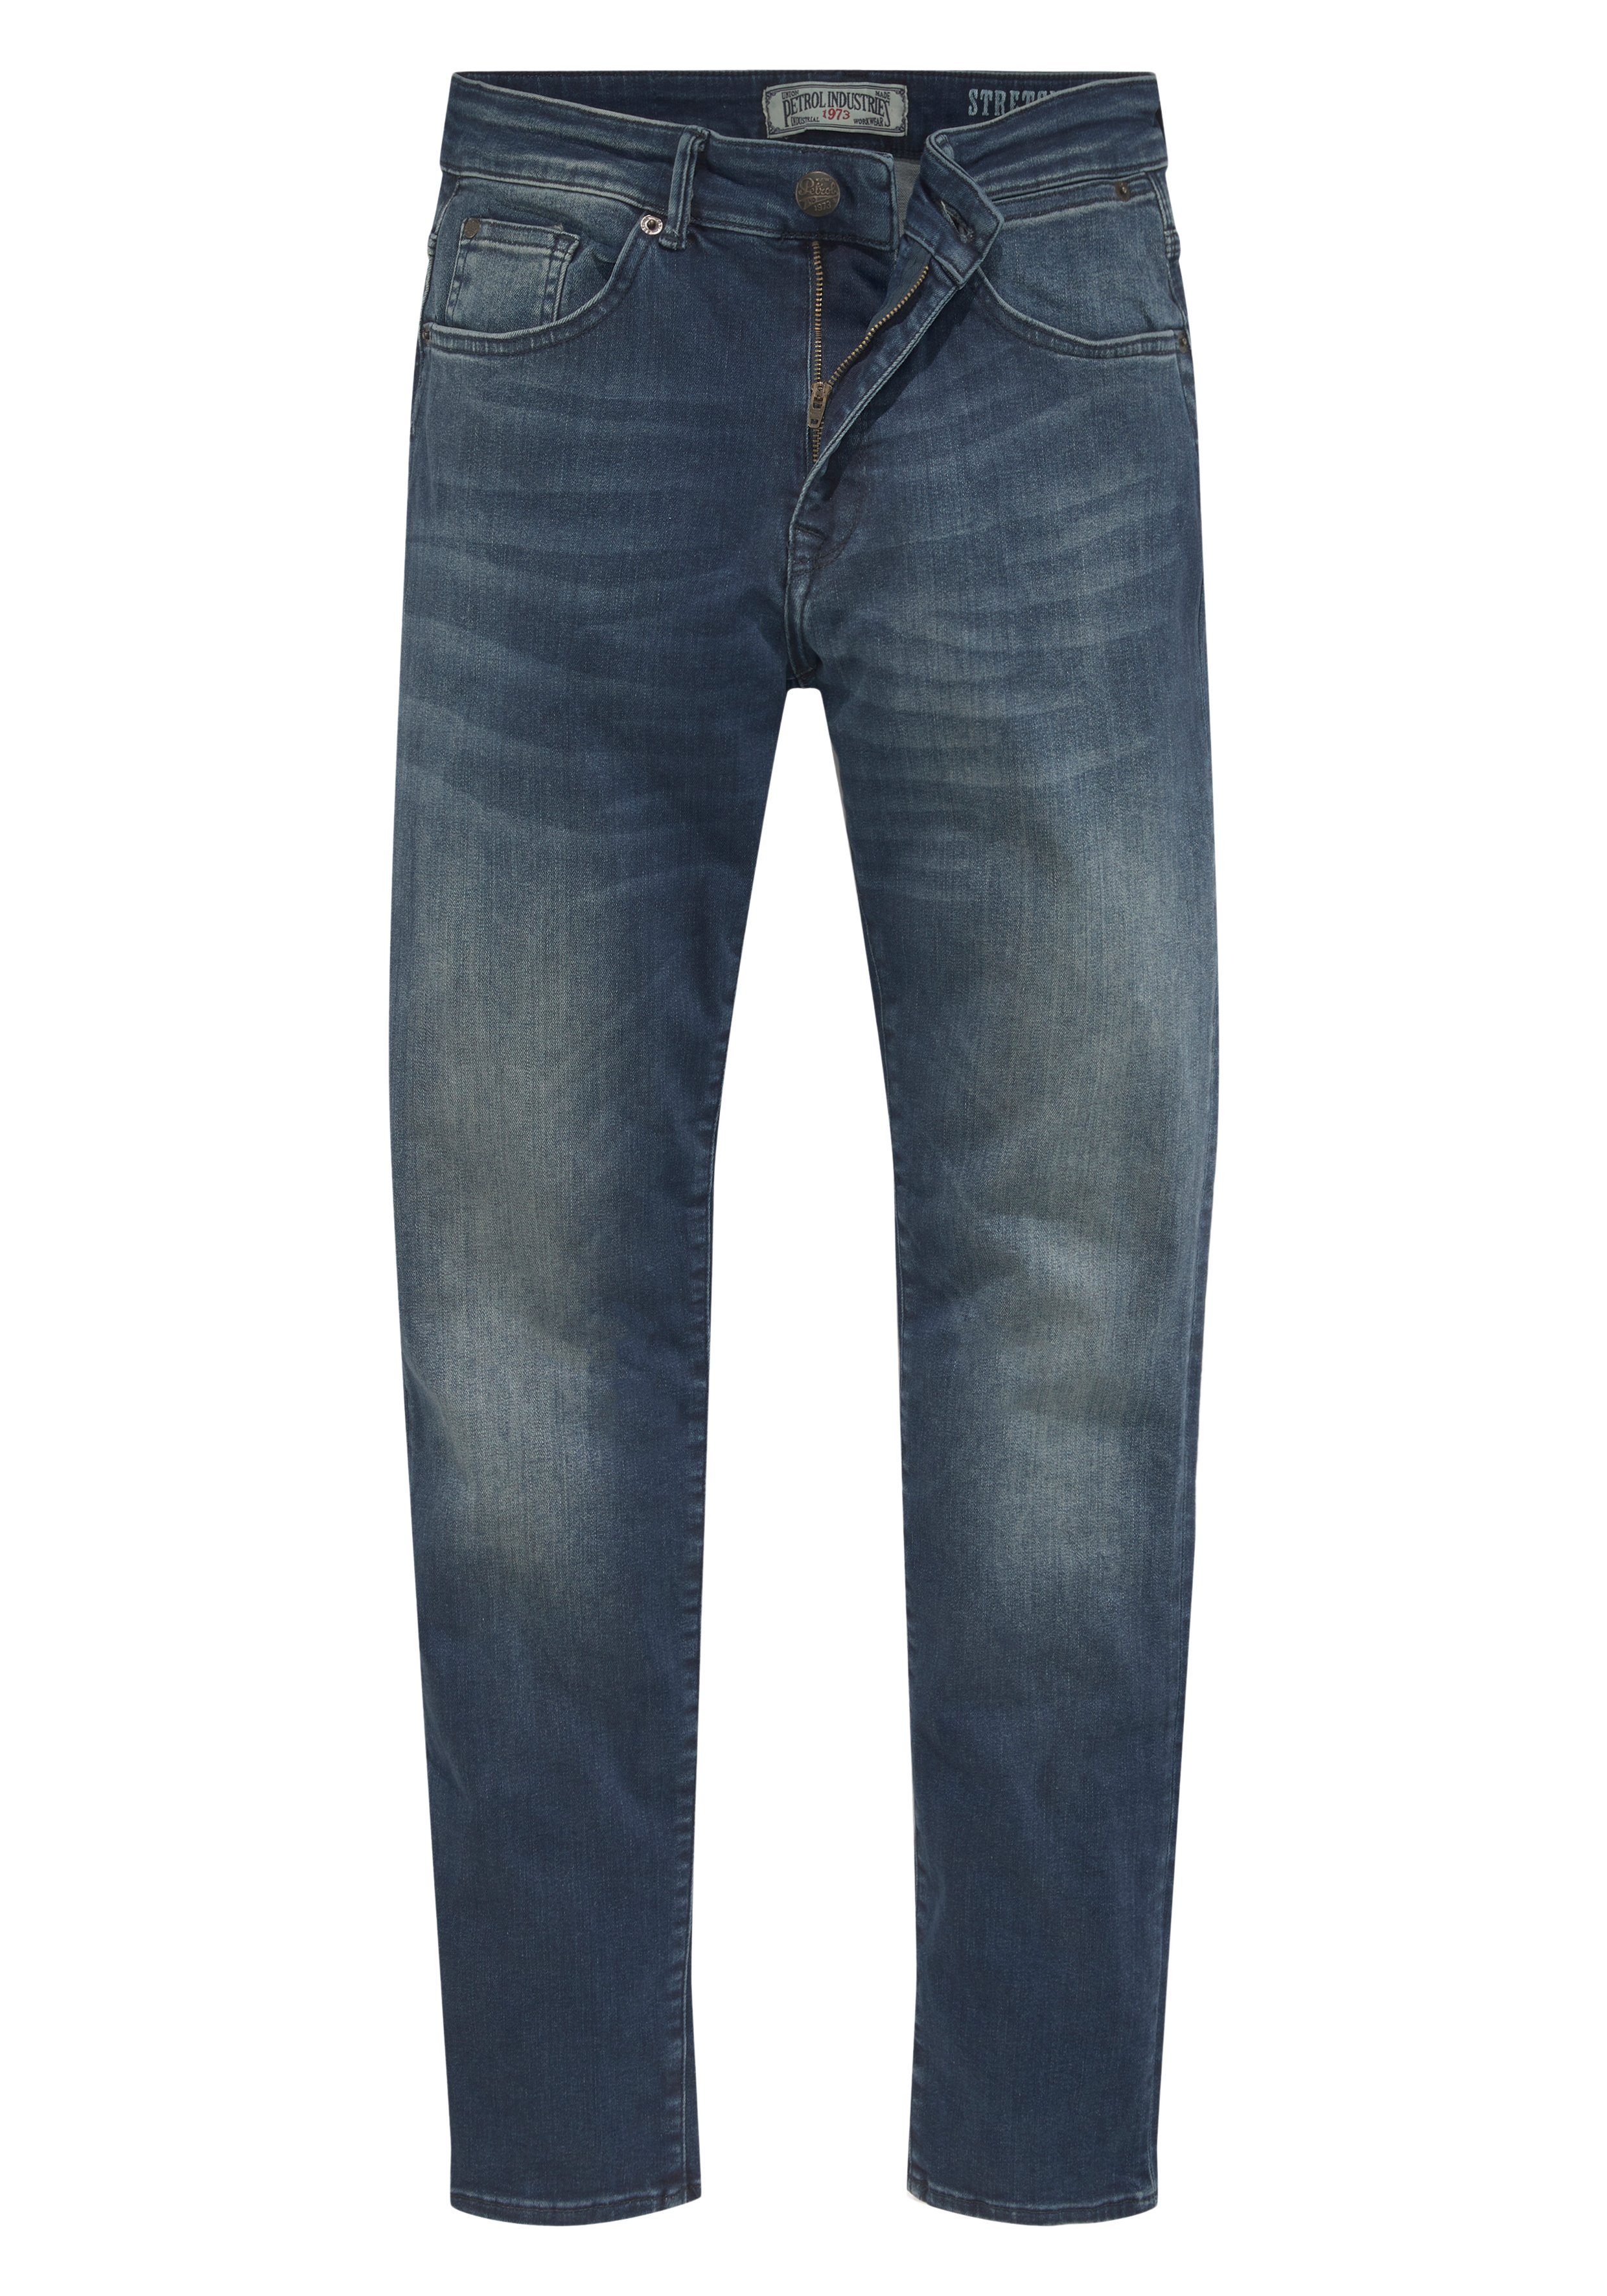 Petrol Industries Slim-fit-Jeans Seaham dark-coated